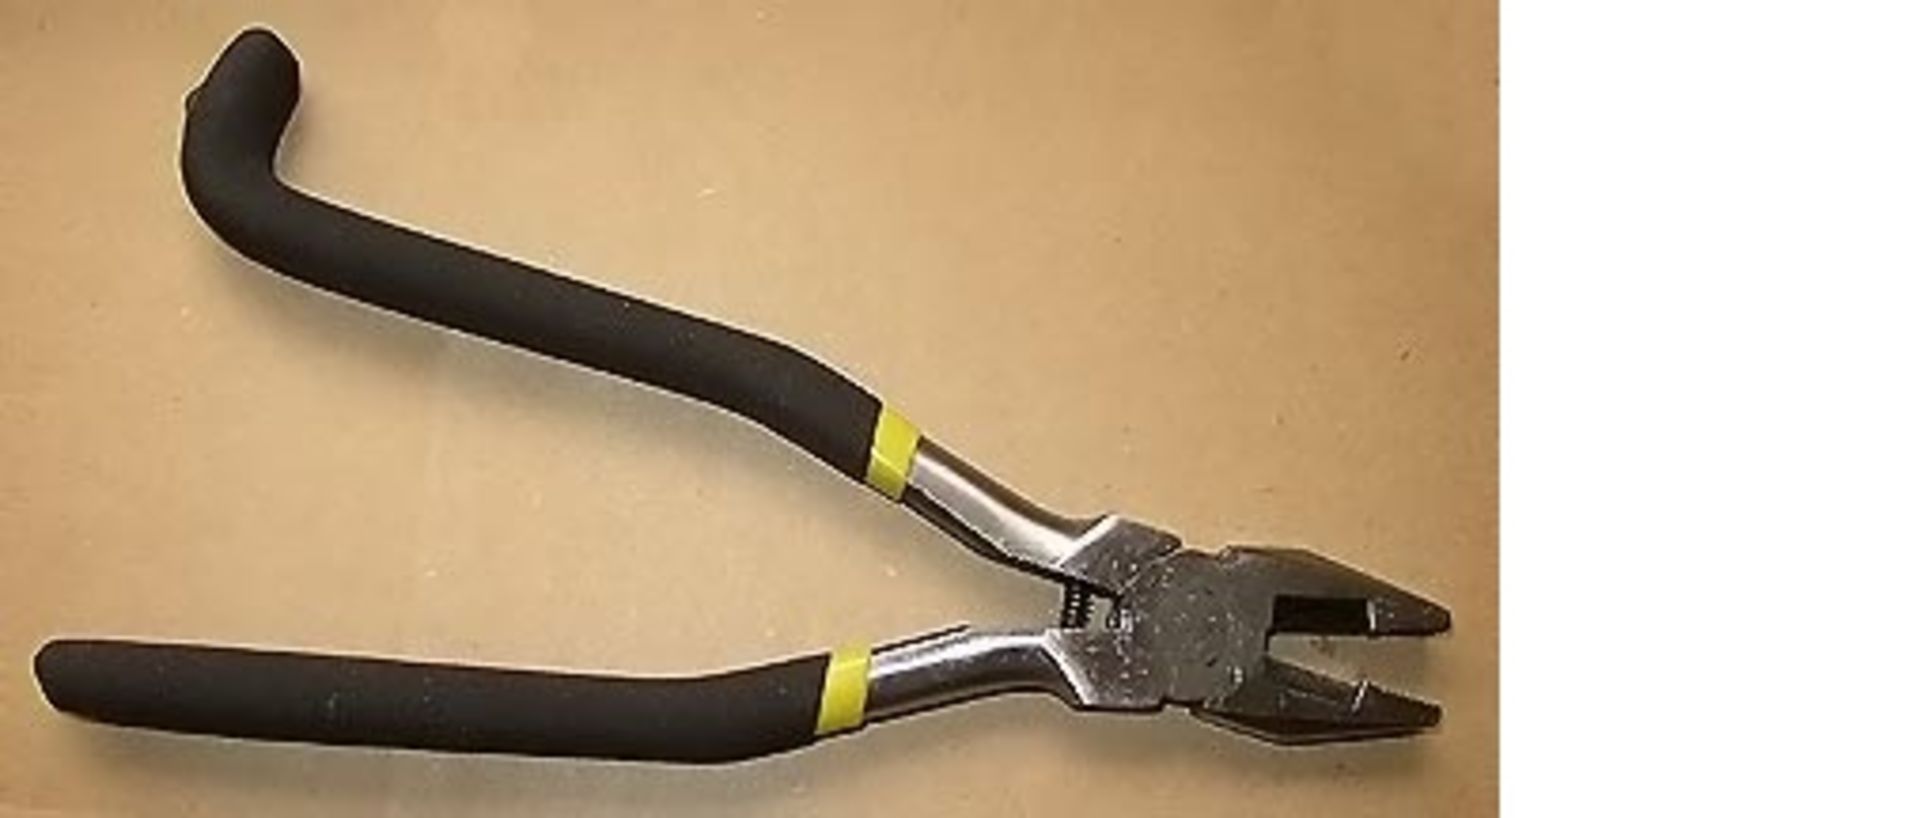 10 inch Iron Work Plier